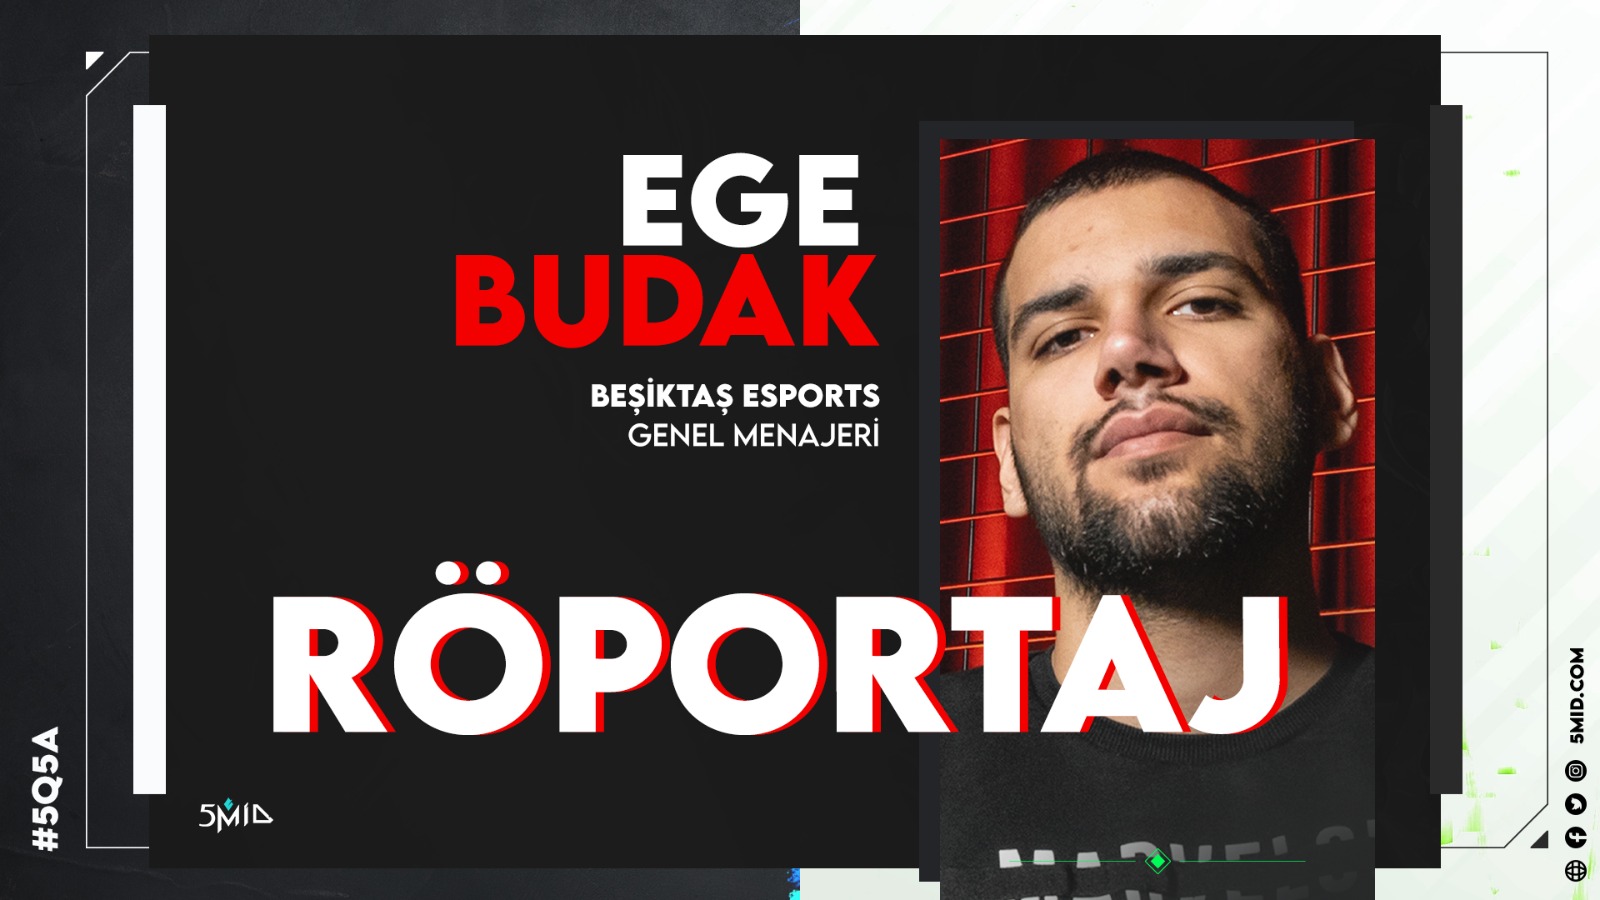 5mid Özel: Beşiktaş Esports Genel Menajeri Ege Budak Röportajı